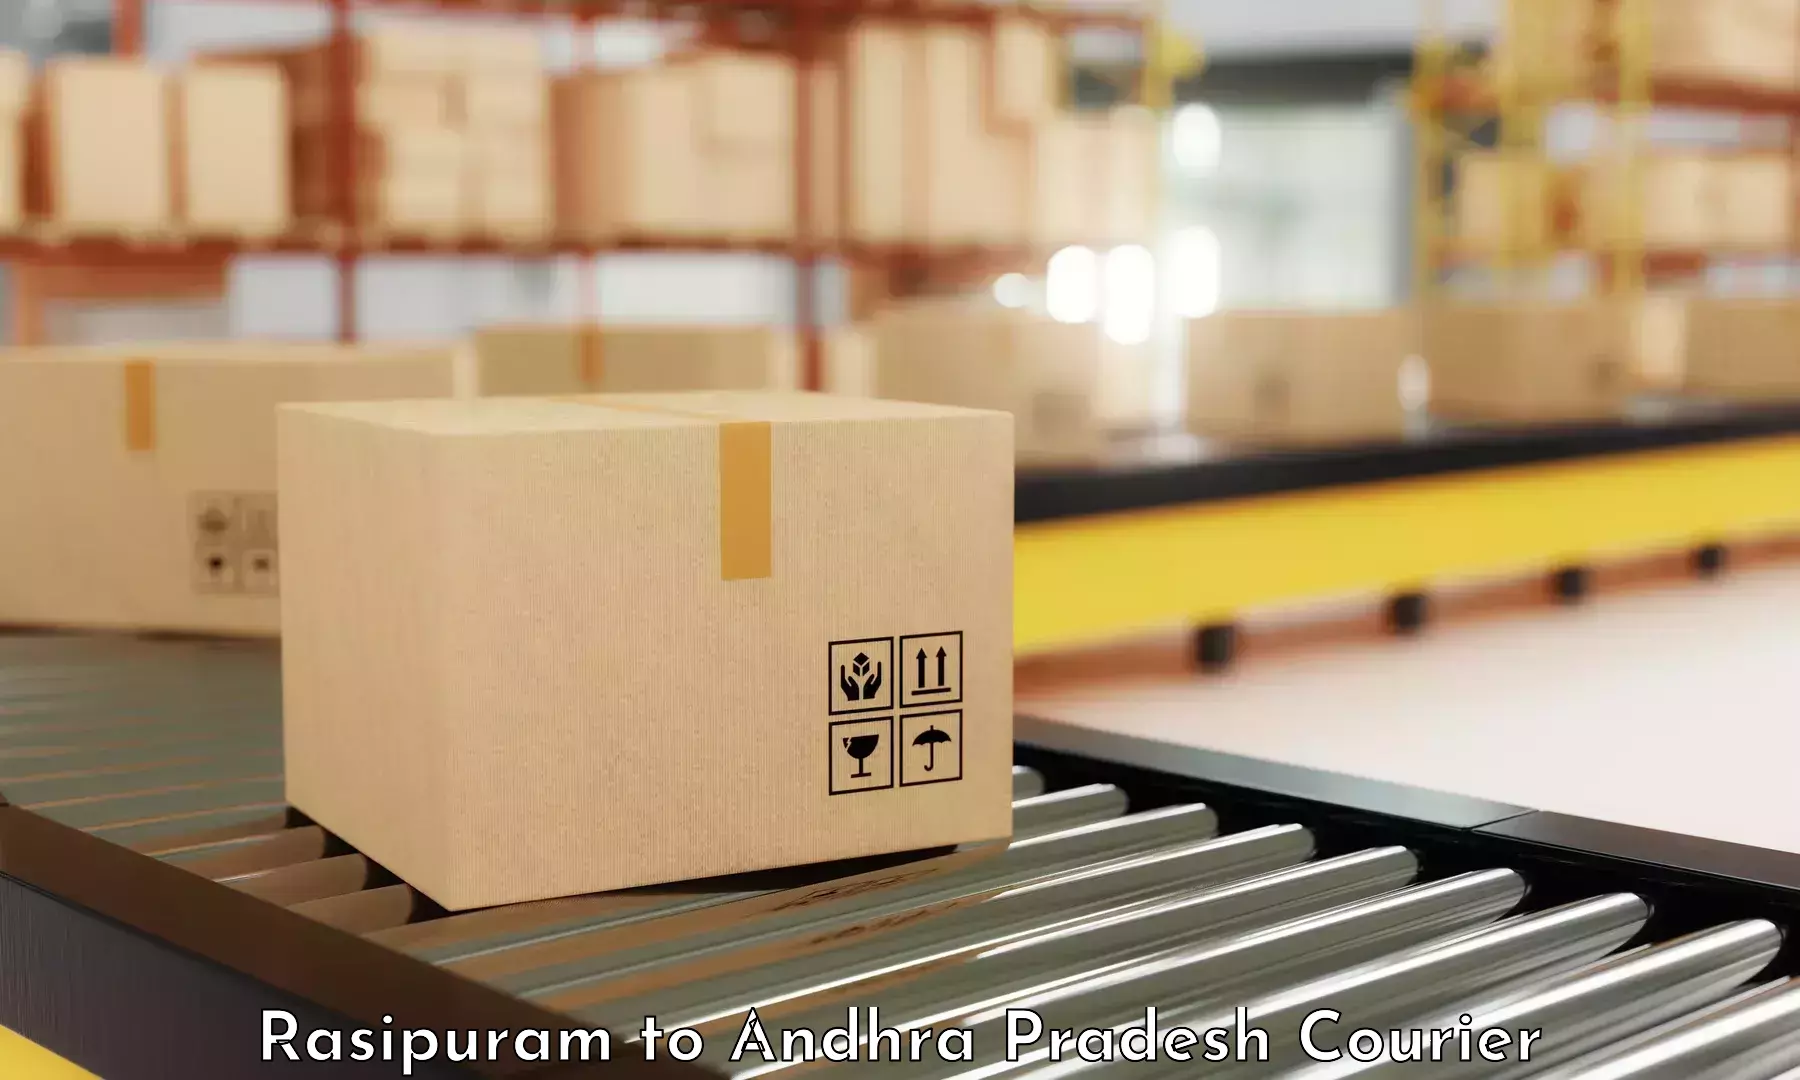 Budget-friendly shipping Rasipuram to Etcherla